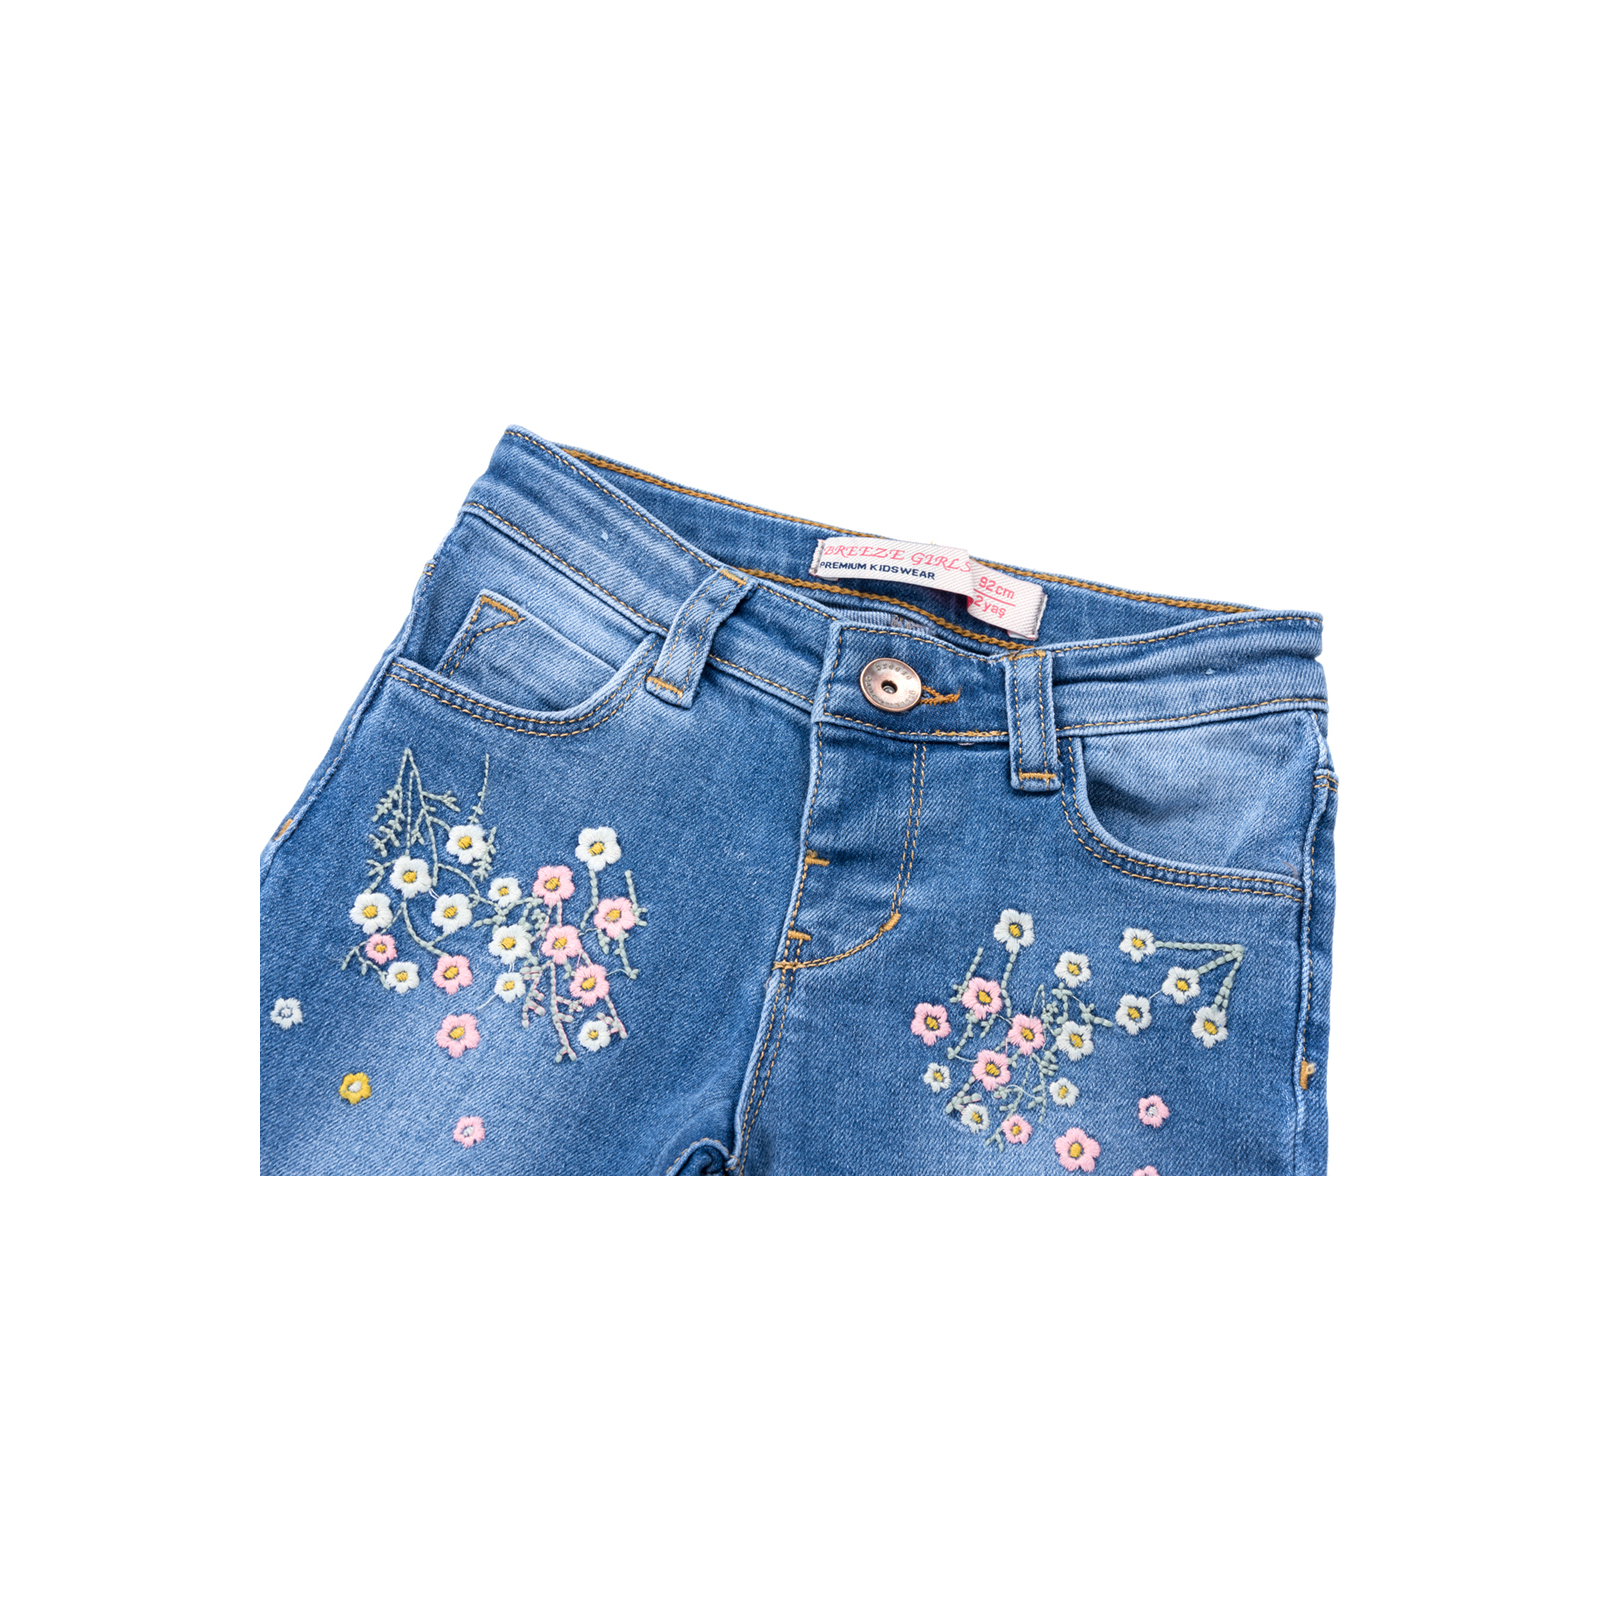 Джинсы Breeze джинсовые с цветочками (OZ-17703-98G-jeans) изображение 2